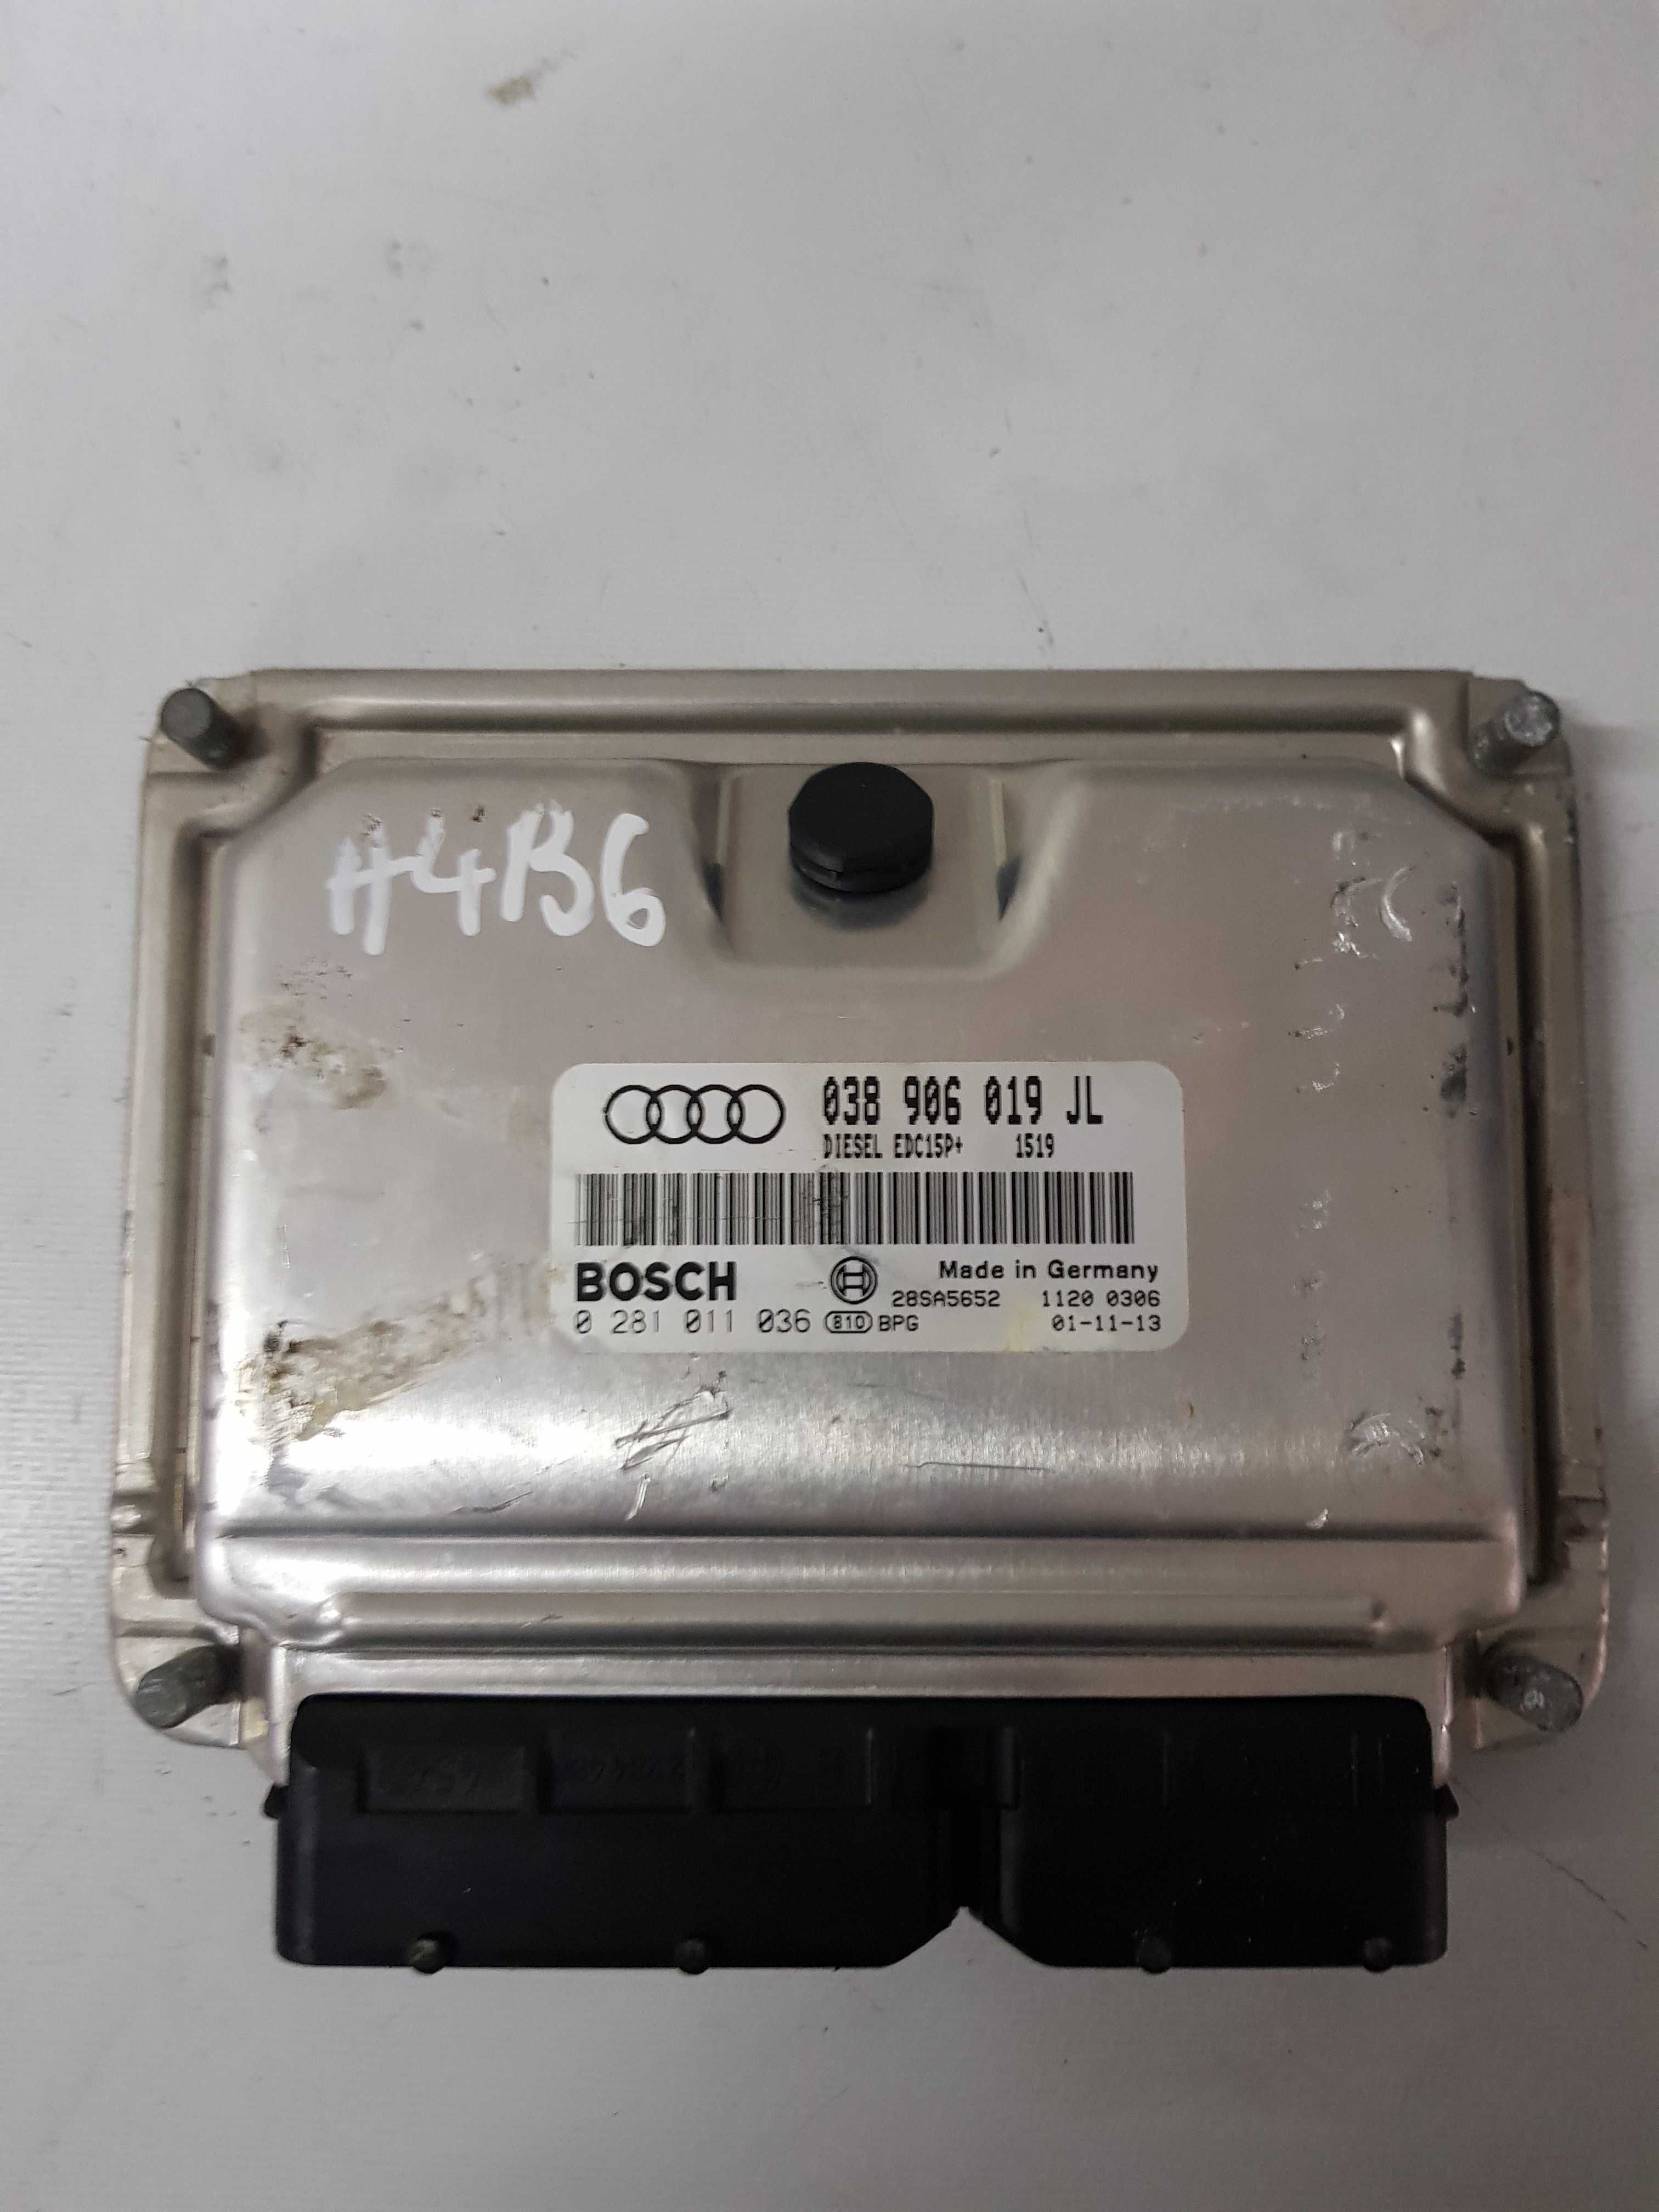 Calculator motor ECU Audi A4 B6 1.9 TDI 038906019JL